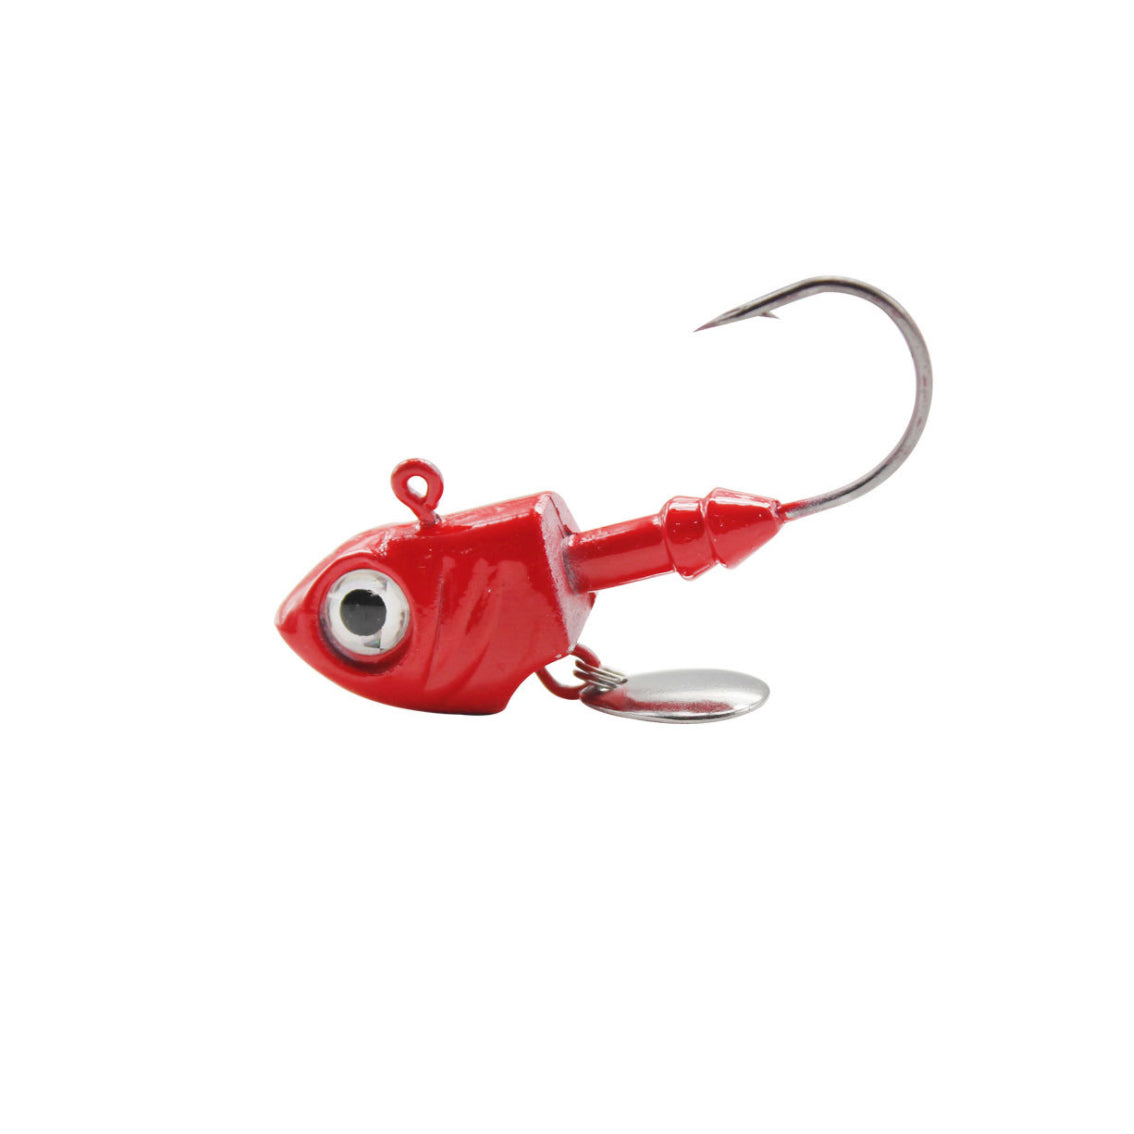 Underspin jig Heads Crappie Fishing Hooks 3.5~10g Swimbait Jig